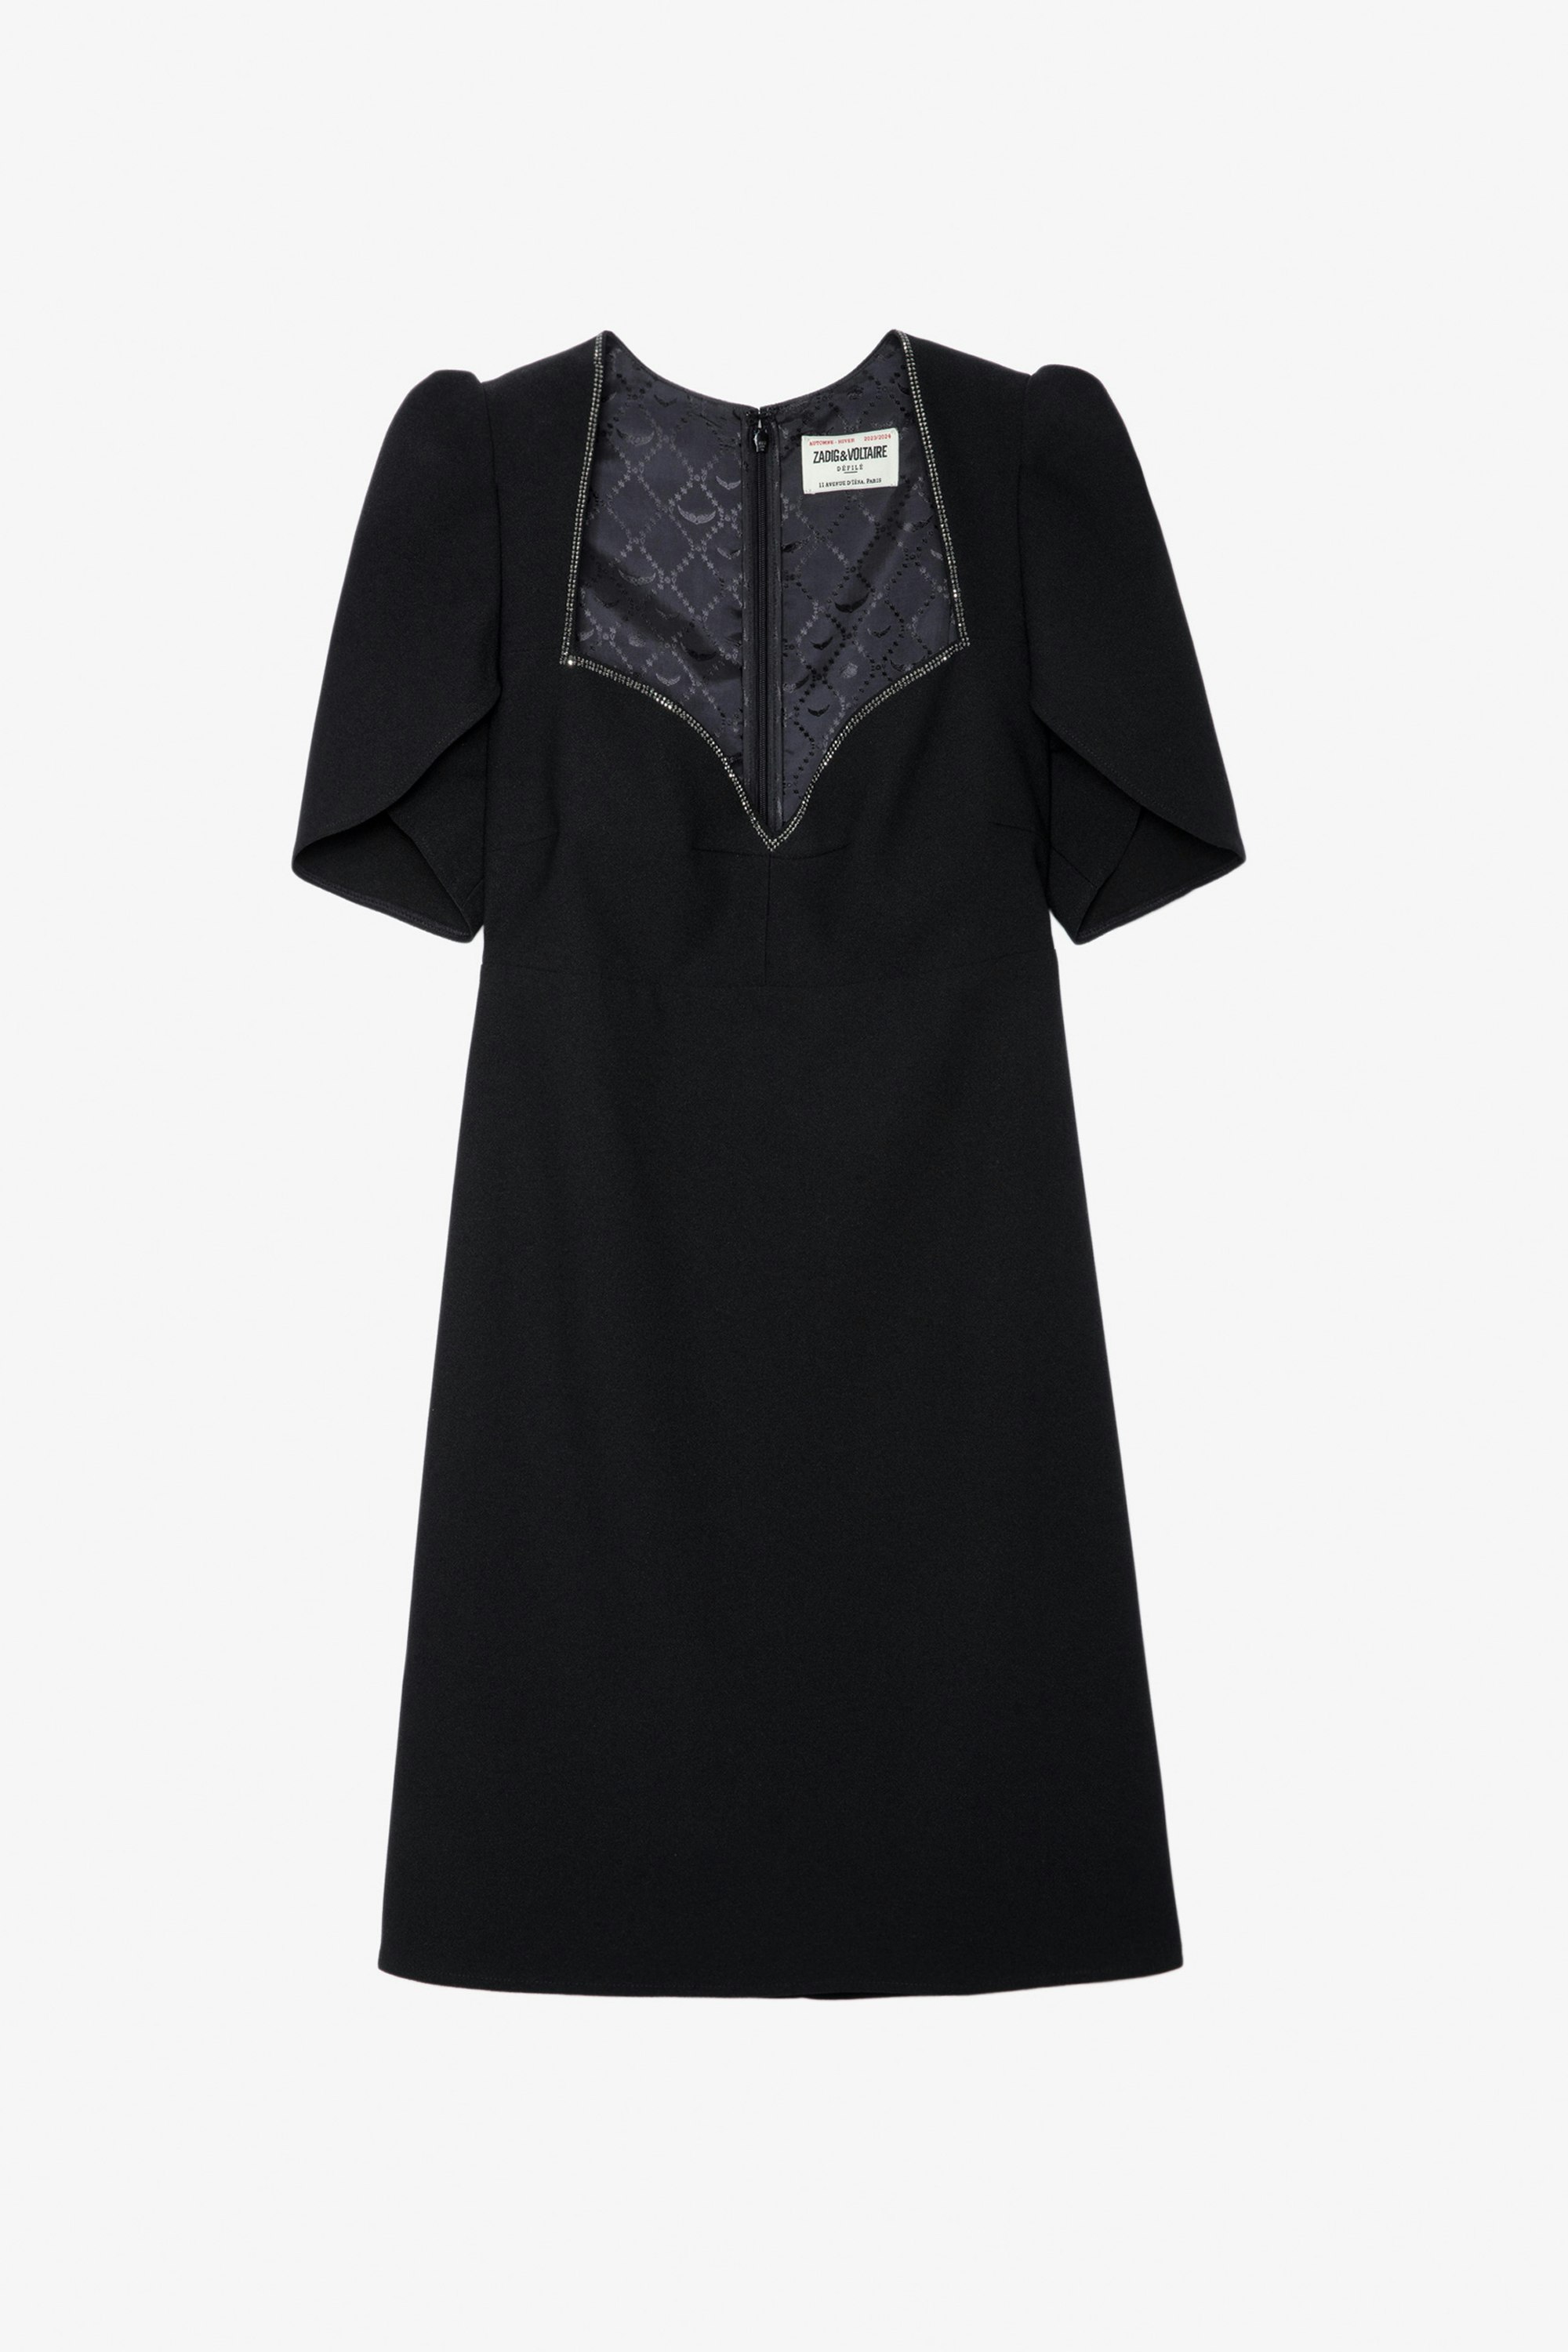 Robe Roxelle Strass - Robe courte en crêpe noir à décolleté cœur en strass et manches courtes asymétriques.